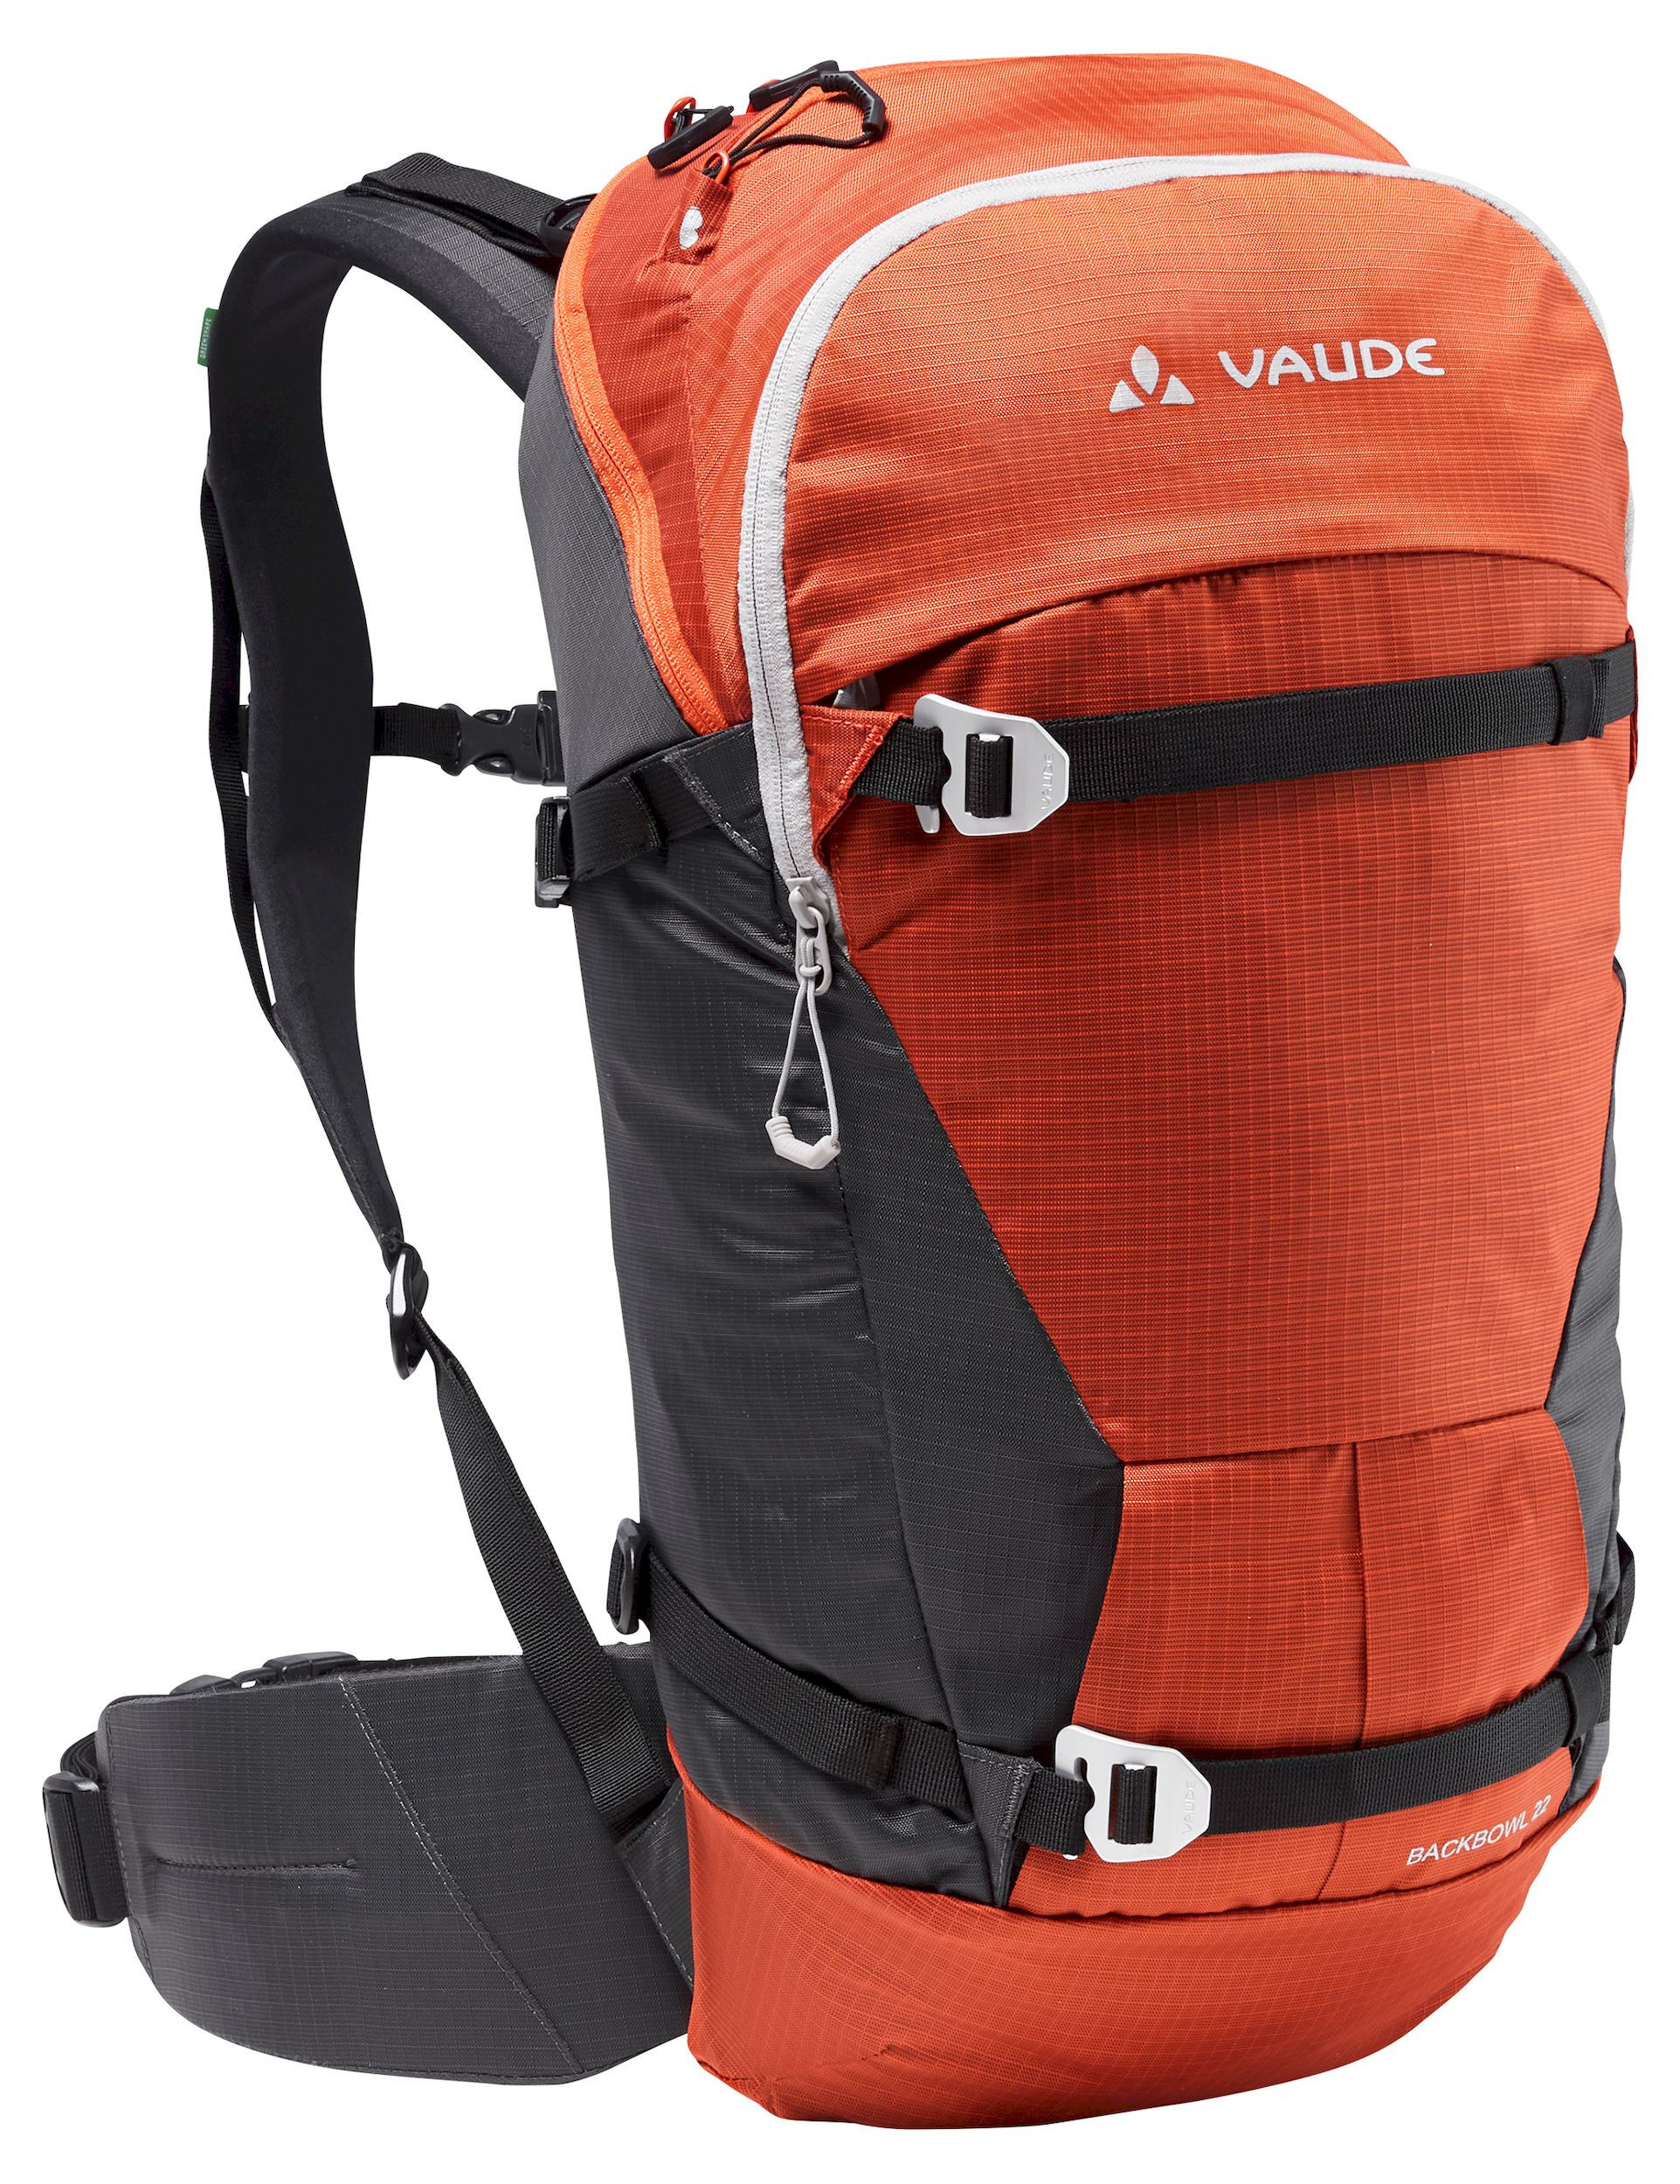 Vaude Back Bowl 22 - Ski Touring backpack